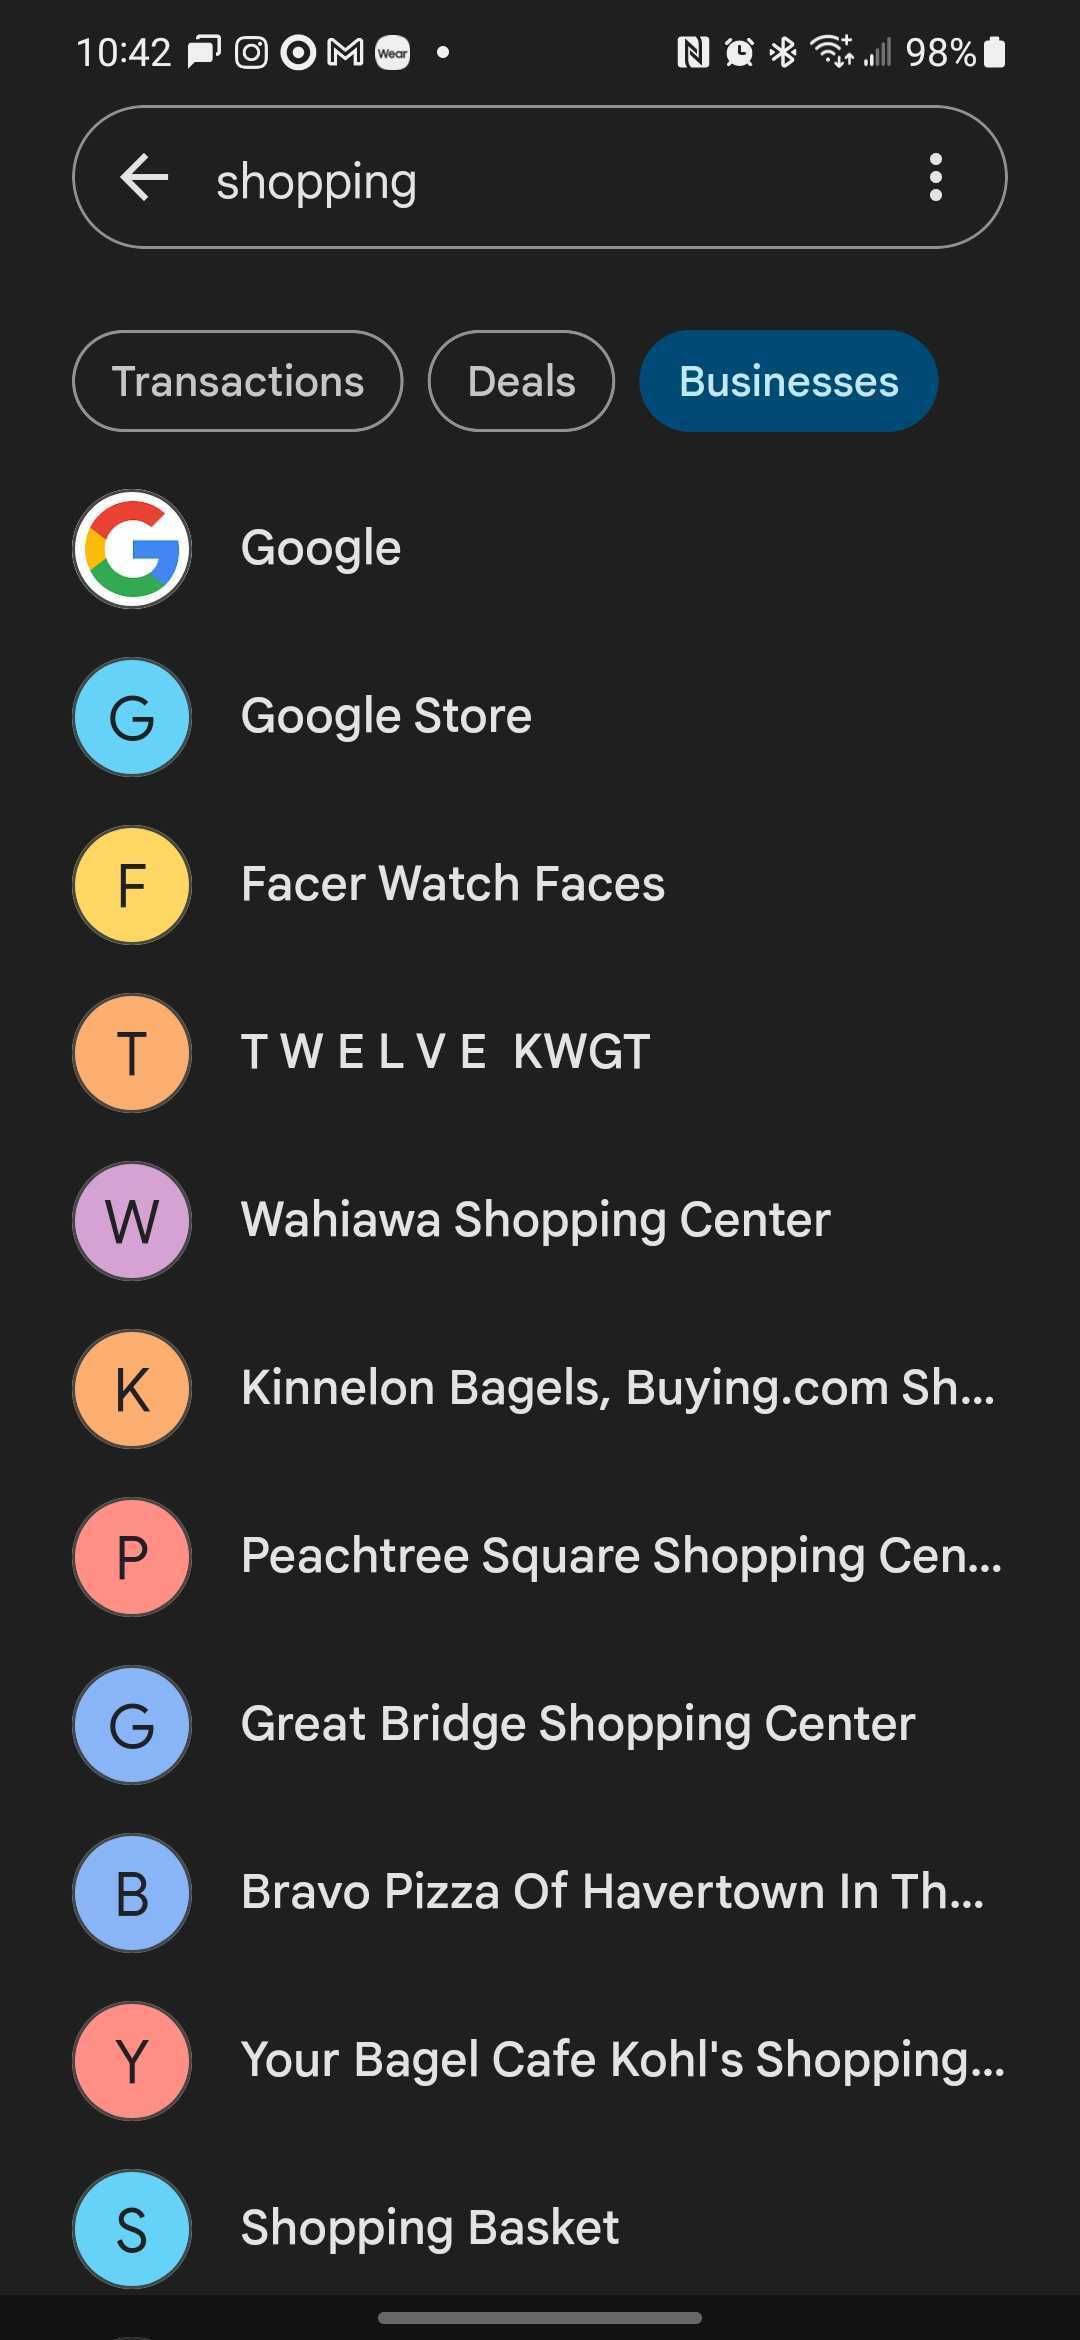 Google Pay no modo escuro com uma lista alfabética de empresas que começam com Google.